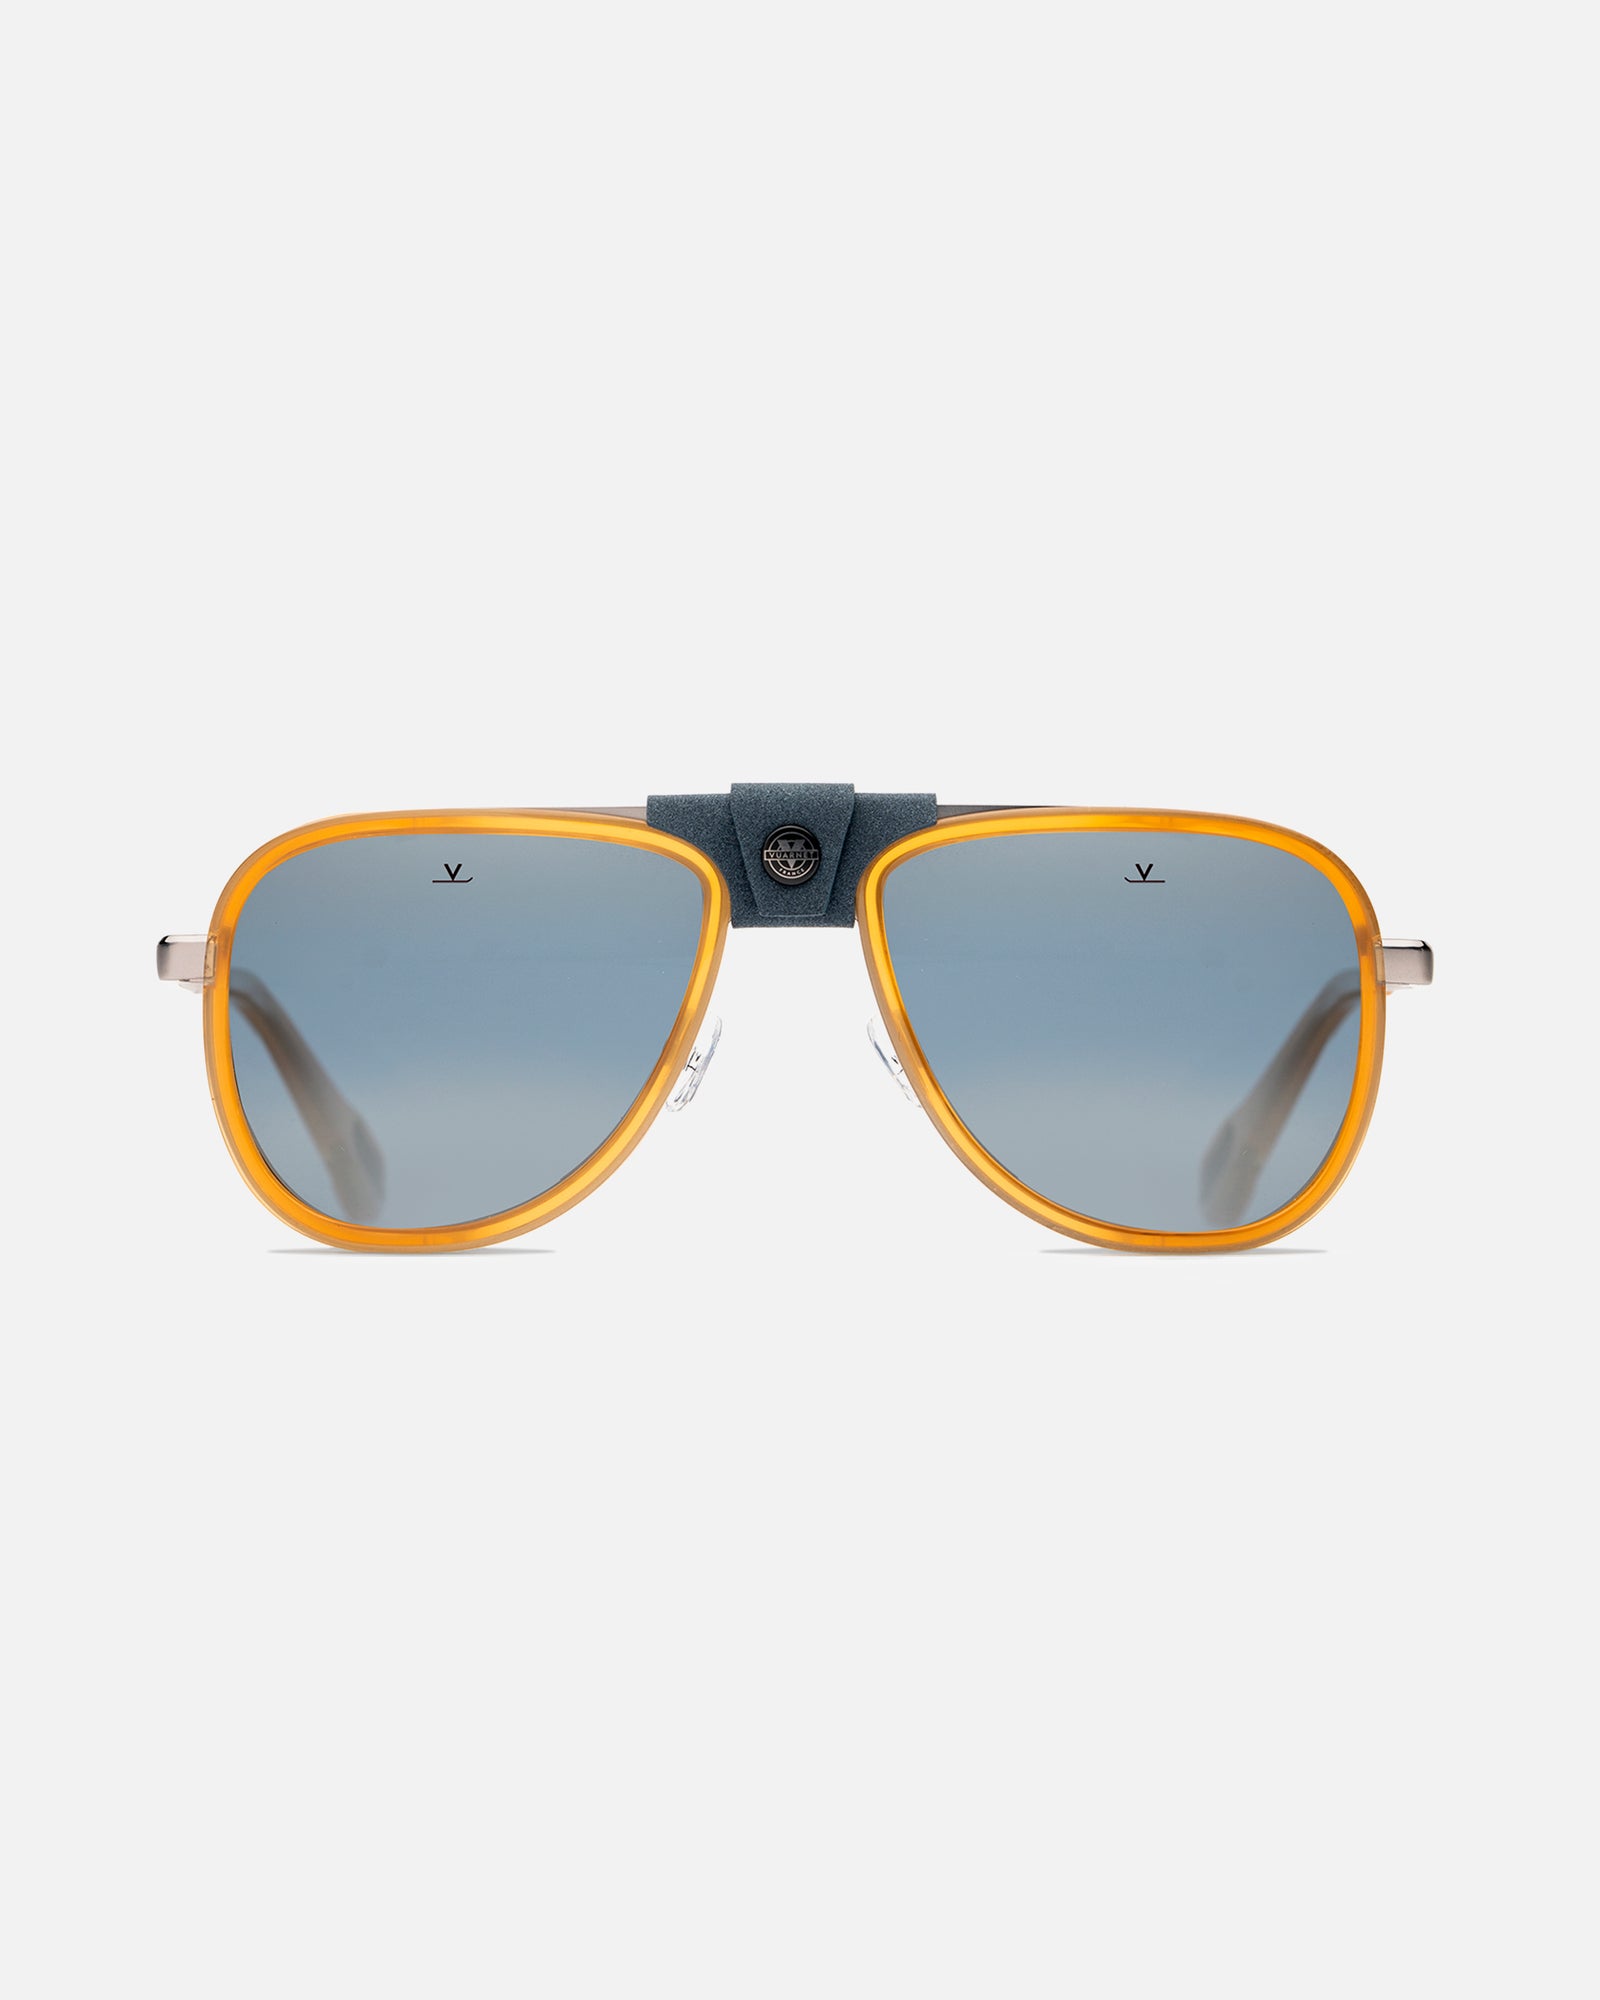 Glacier Goggles / Glacier Sunglasses